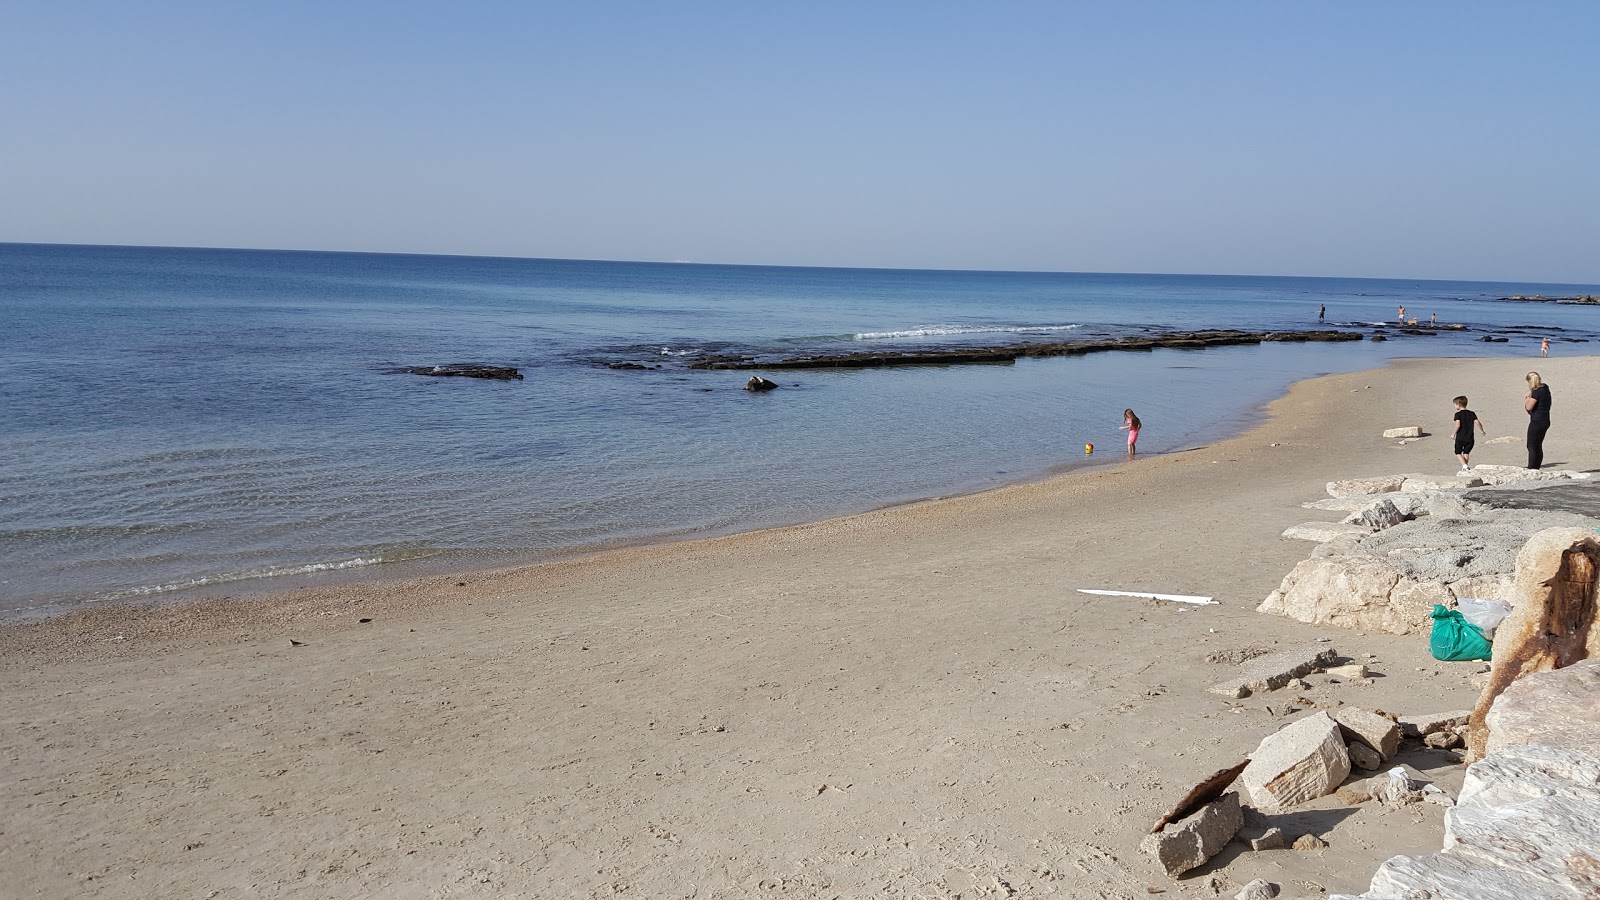 Fotografie cu Blue Bay beach cu o suprafață de apa pură turcoaz